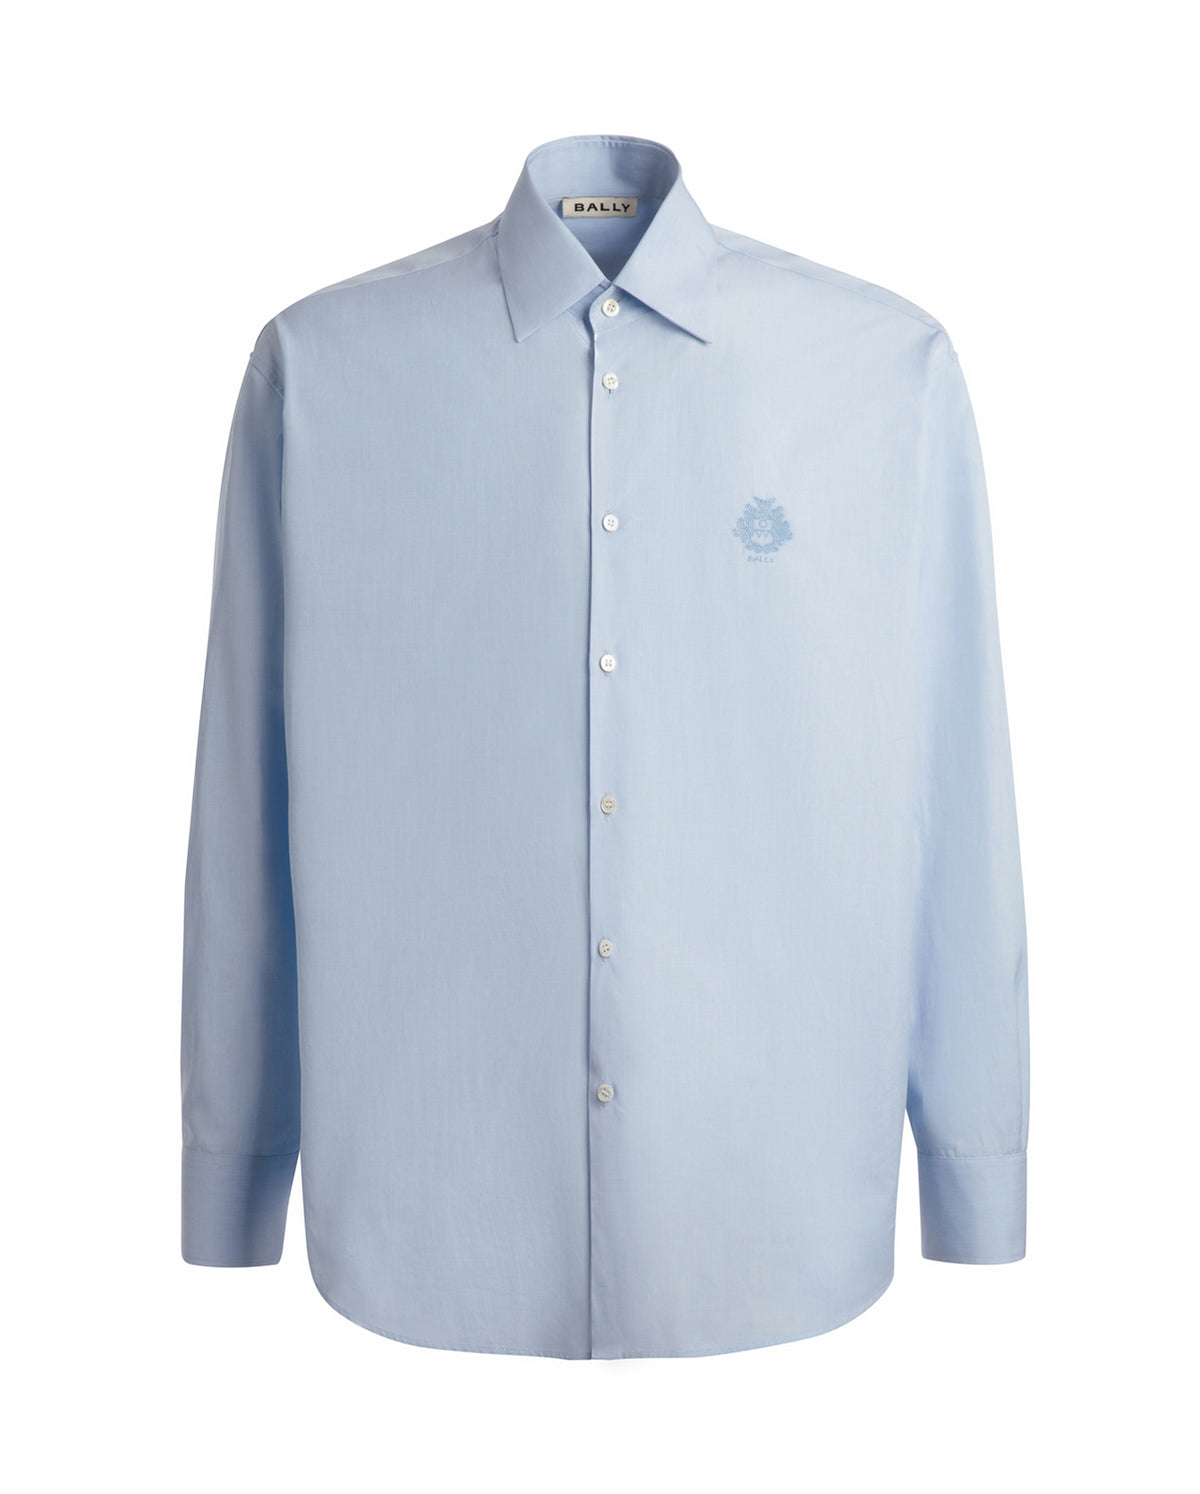 Light Blue Cotton Button Up Shirt